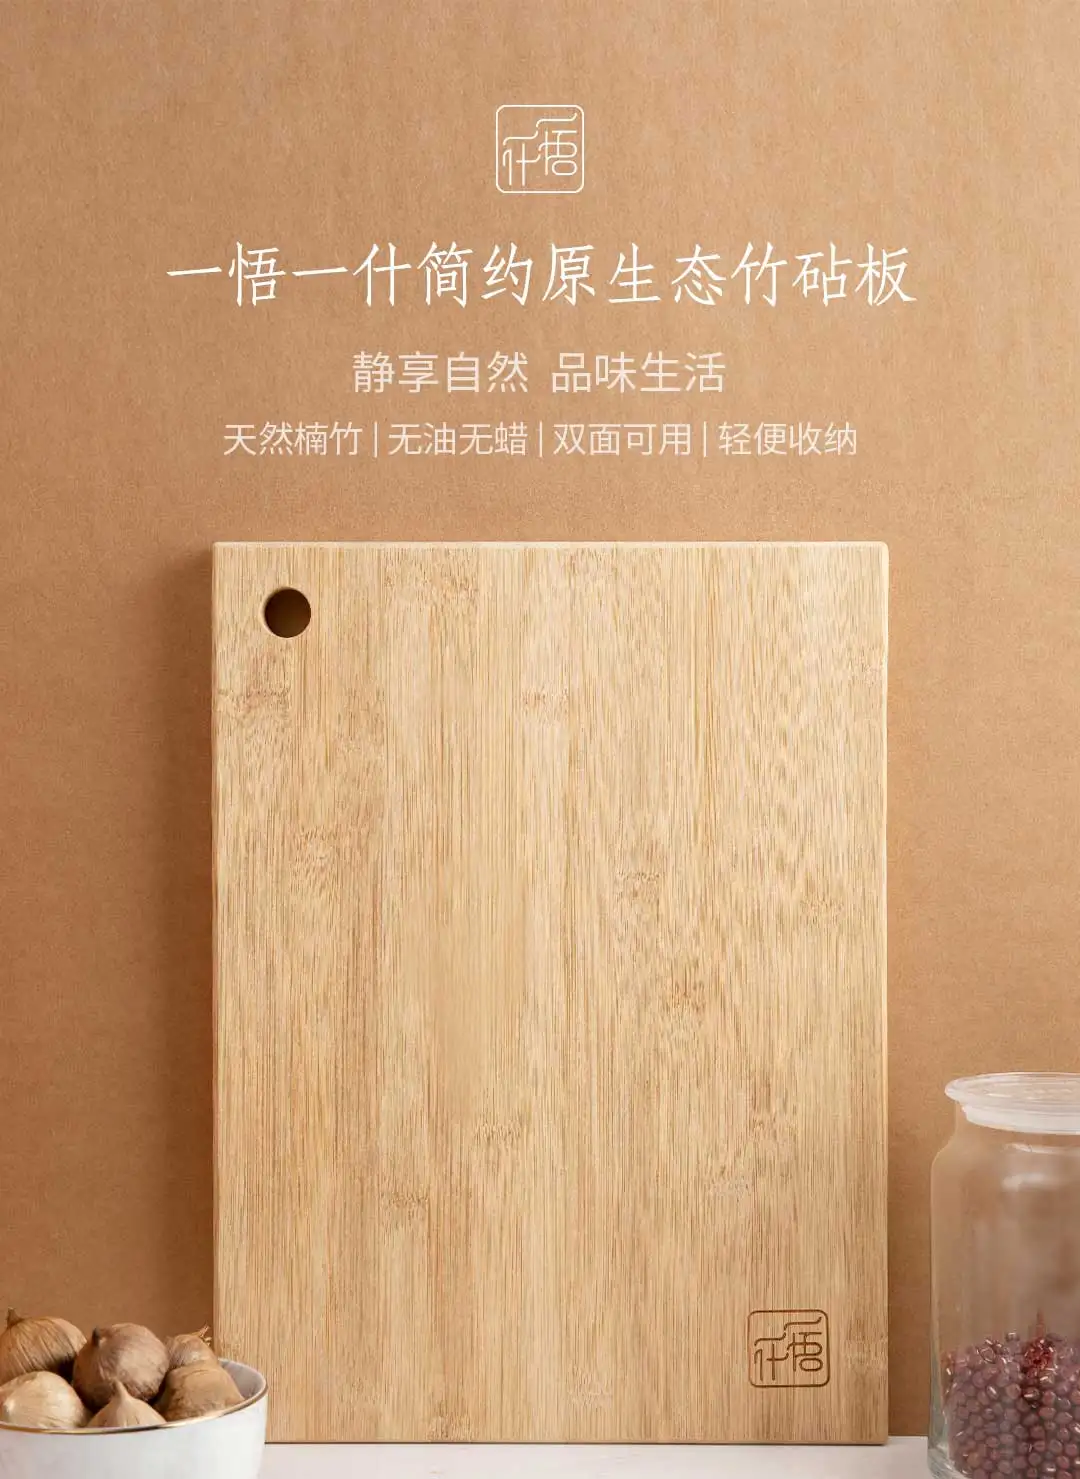 Xiaomi Mijia Youpin простая оригинальная бамбуковая разделочная доска из натурального бамбука без масла и воска двухсторонняя